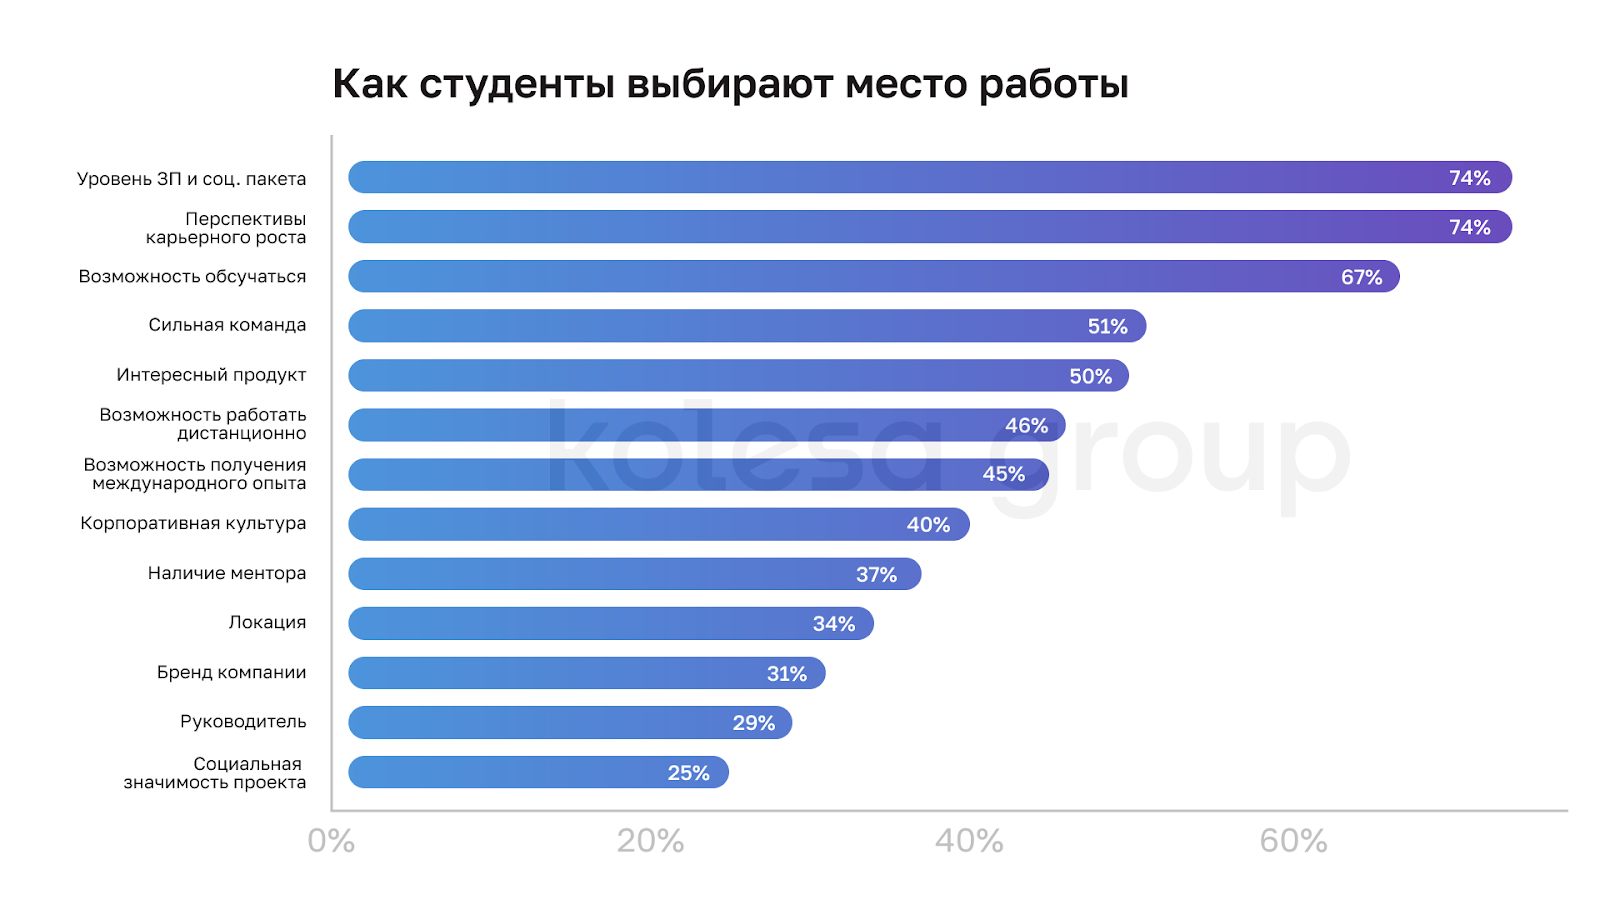 Топ-5 факторов для казахстанских студентов при выборе работодателя в IT — исследование Kolesa Group